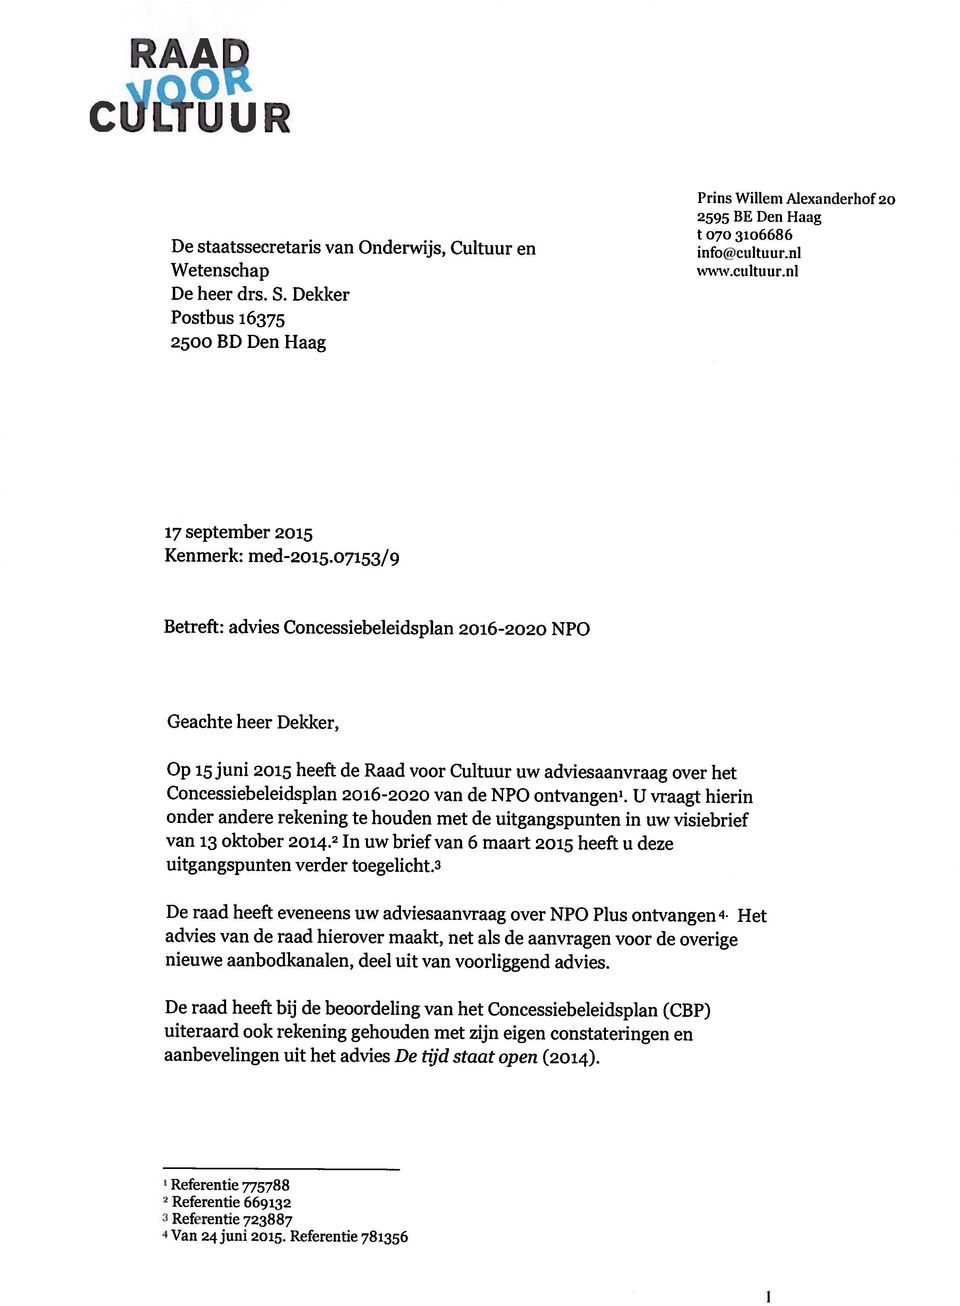 Referentie 781356 Refrrentie 723887 aanbevelingen uit het advies De tijd staat open (2014).